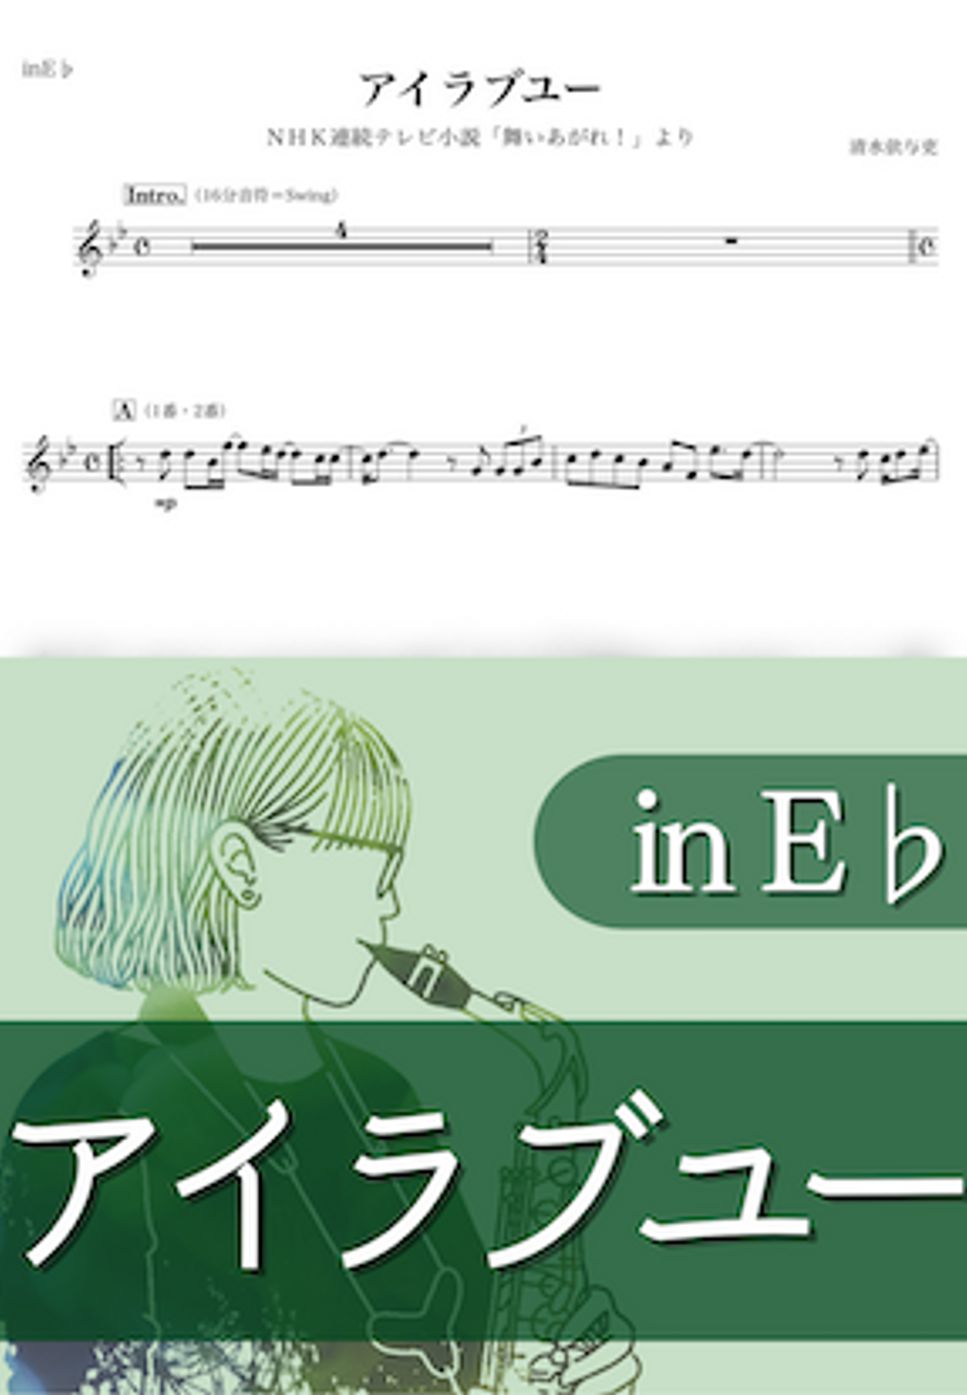 back number - アイラブユー (E♭) by kanamusic